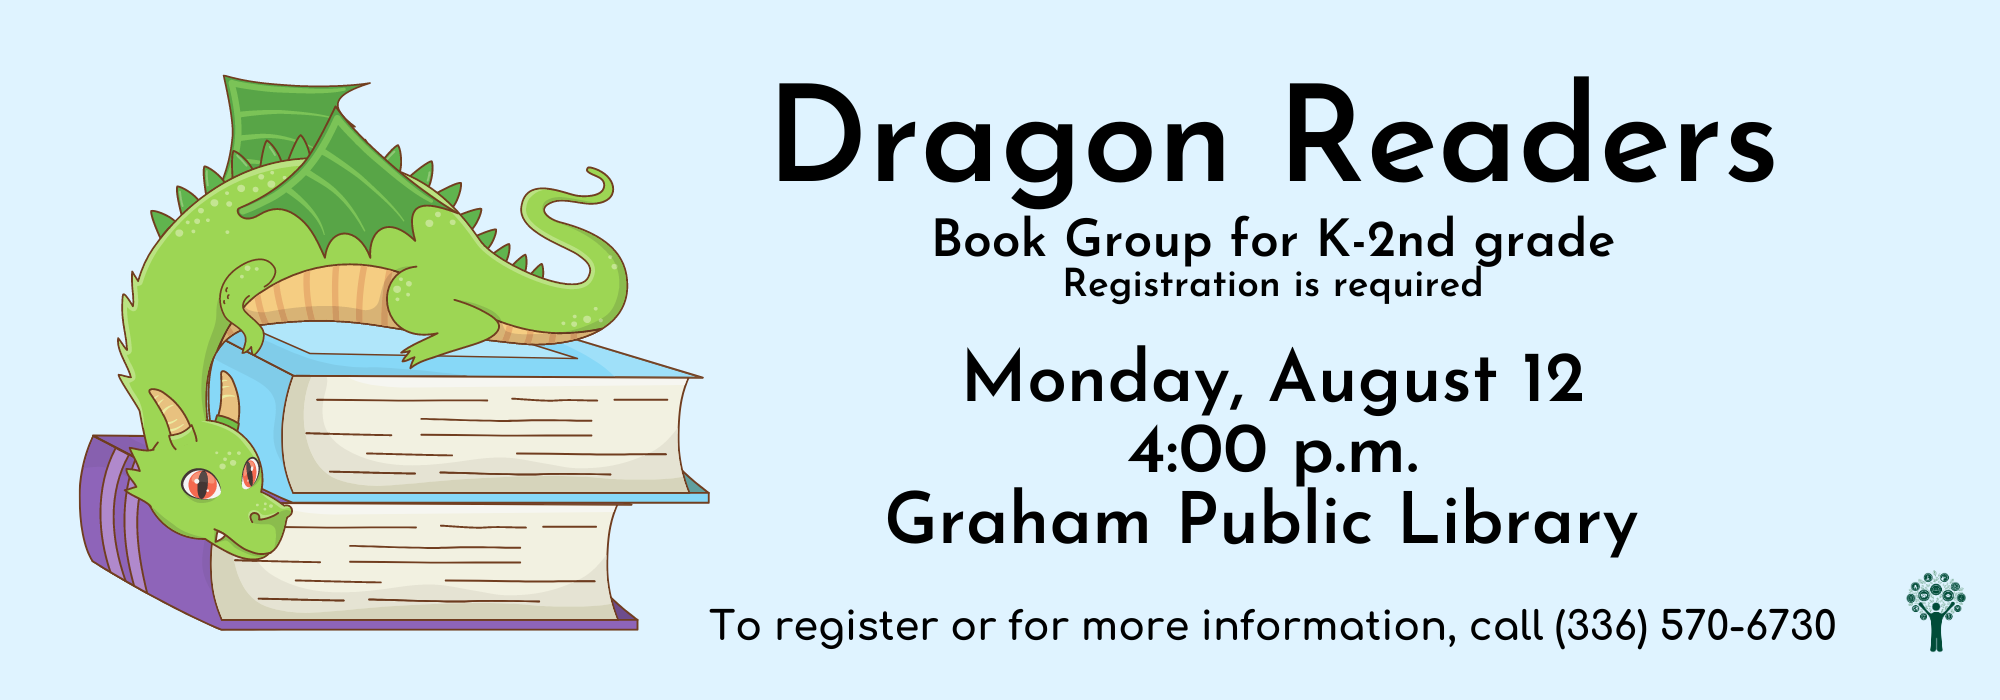 8.12 at 4 pm - Dragon Readers Book Group at Graham